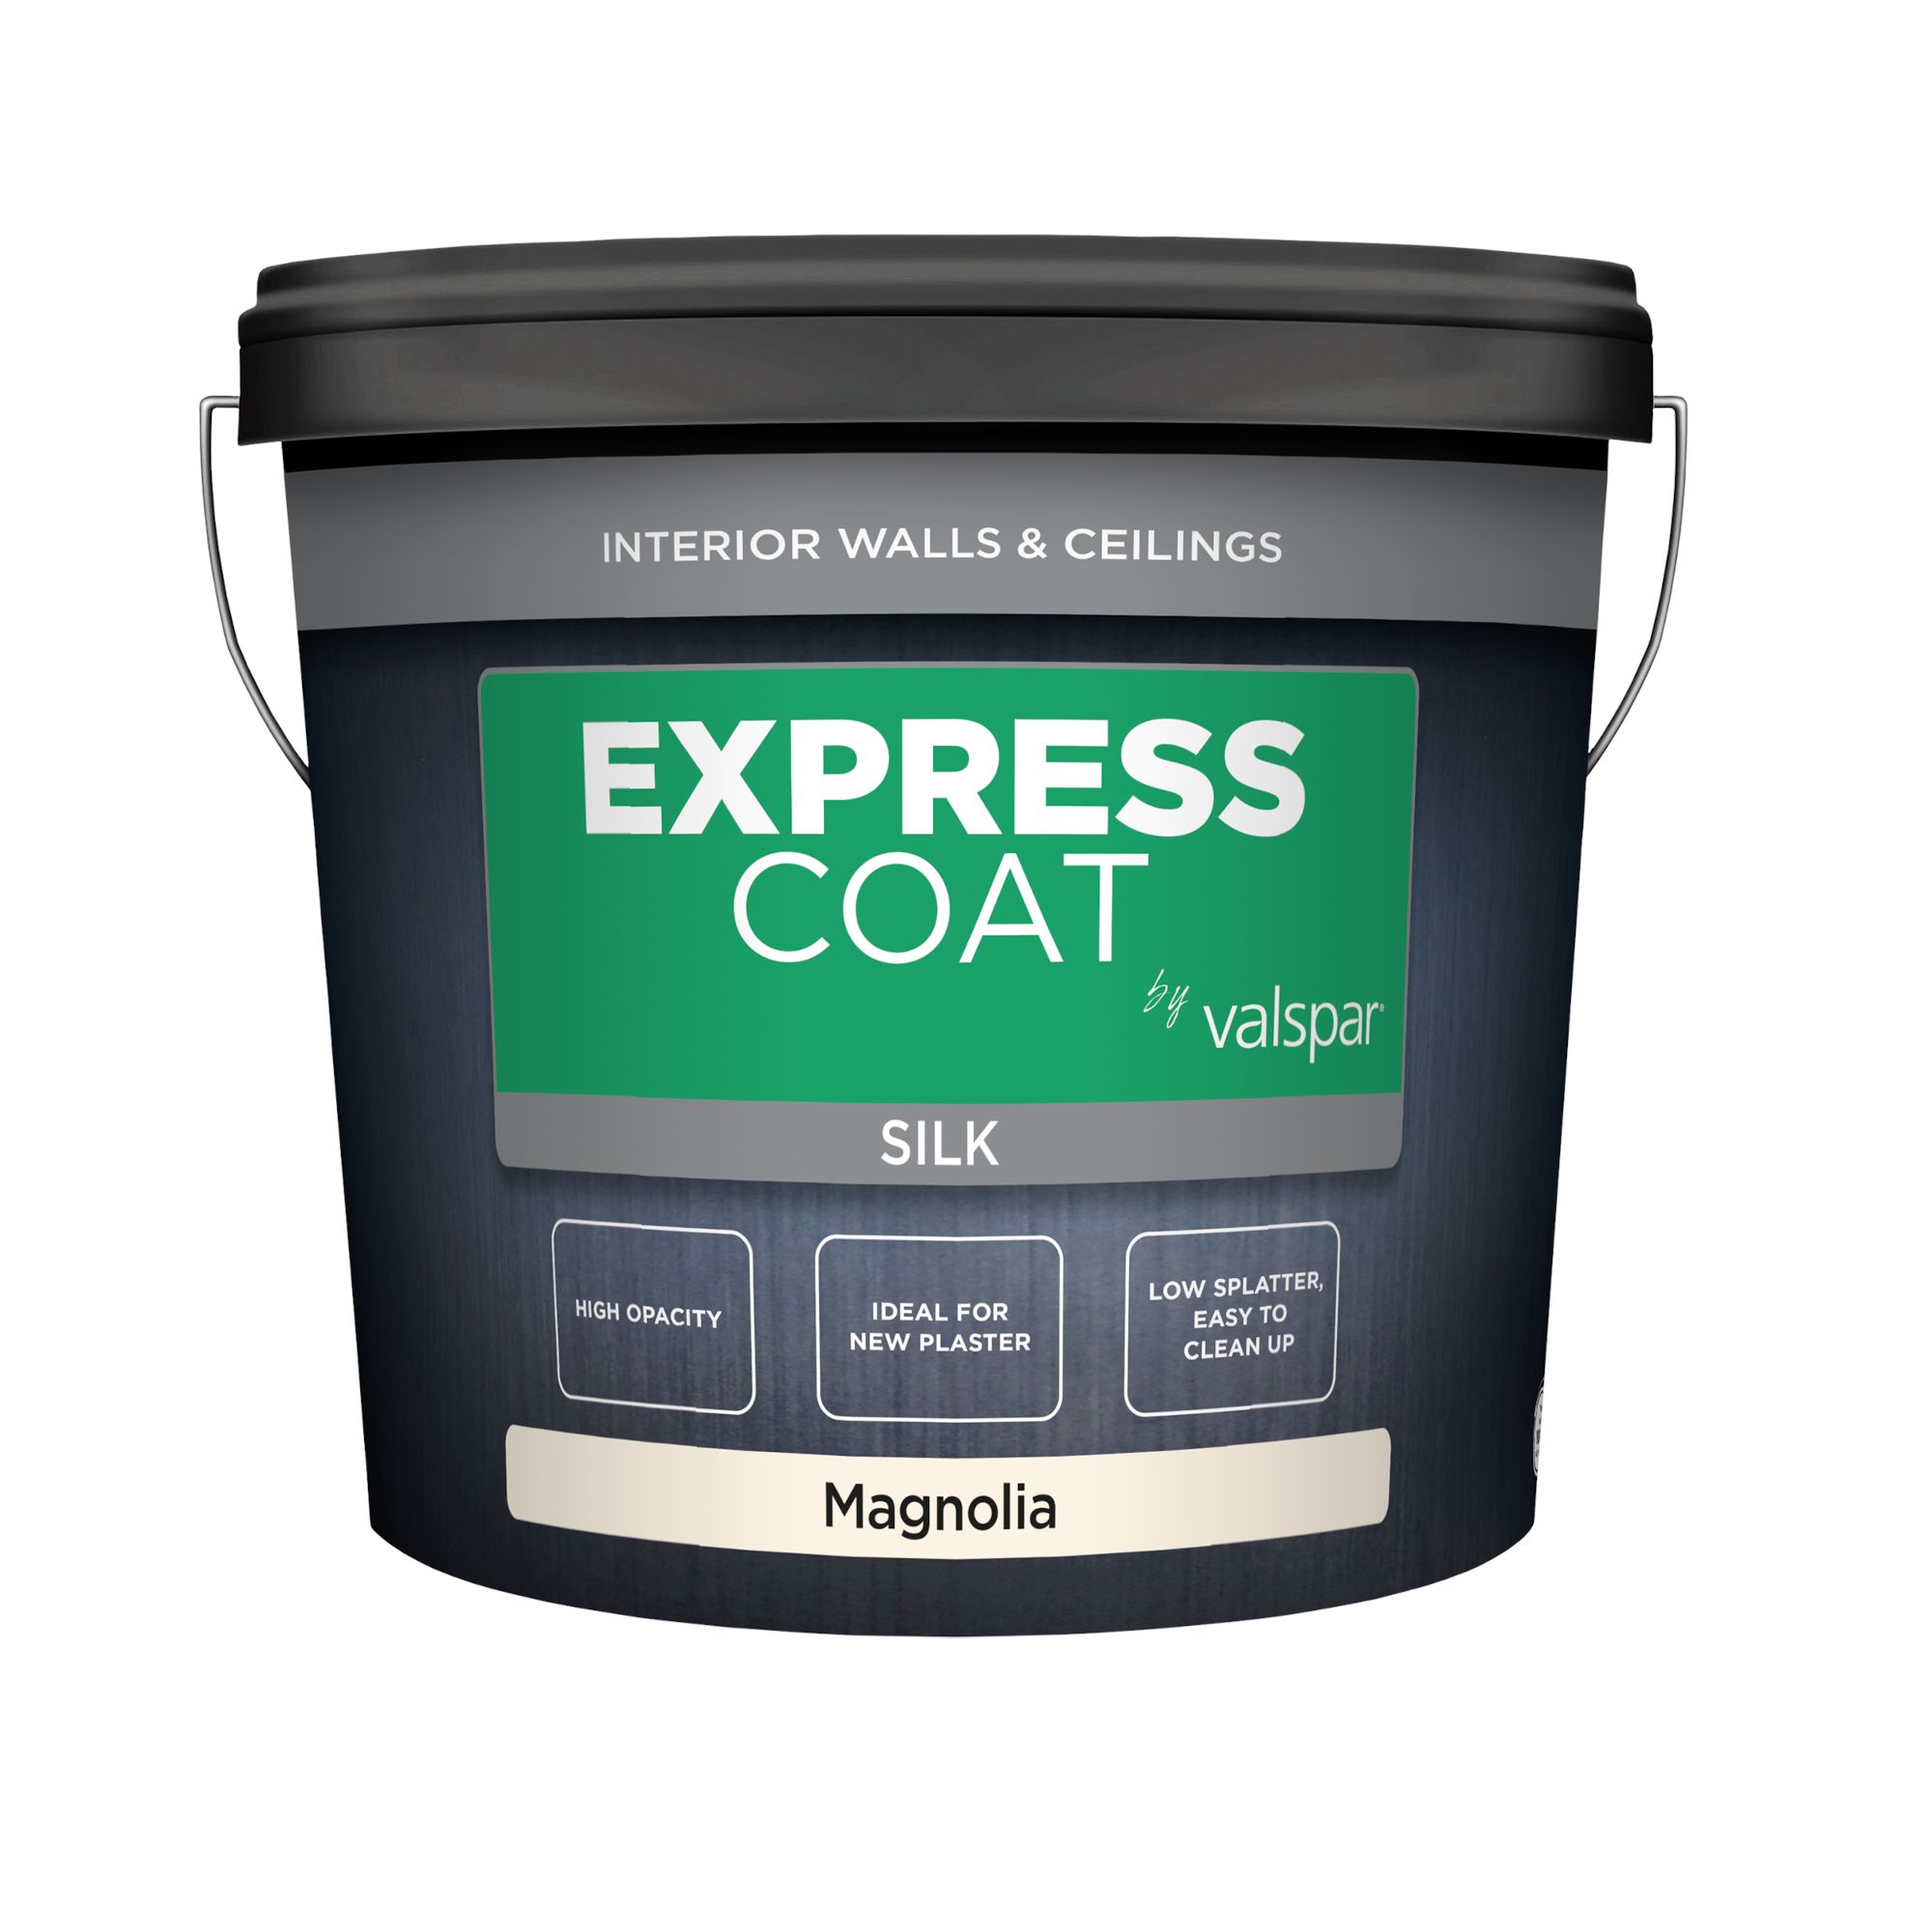 Valspar Express Coat Magnolia Silk Wall paint, 10L